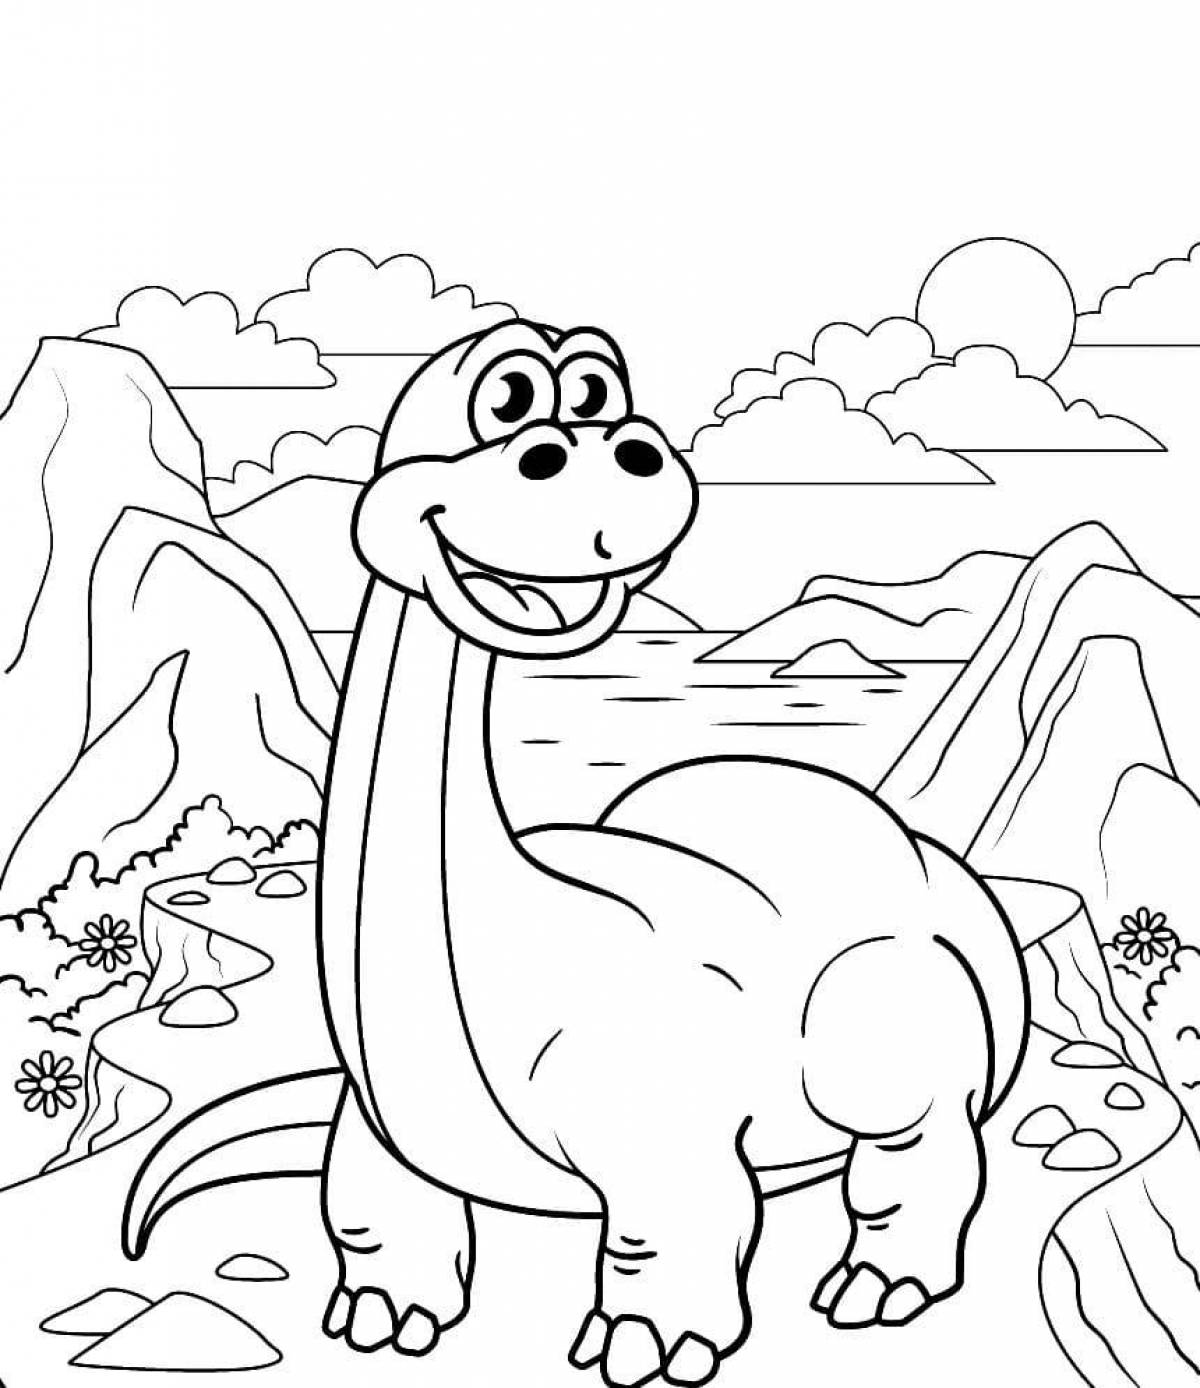 Безумная раскраска для детей динозавров 3-4 лет